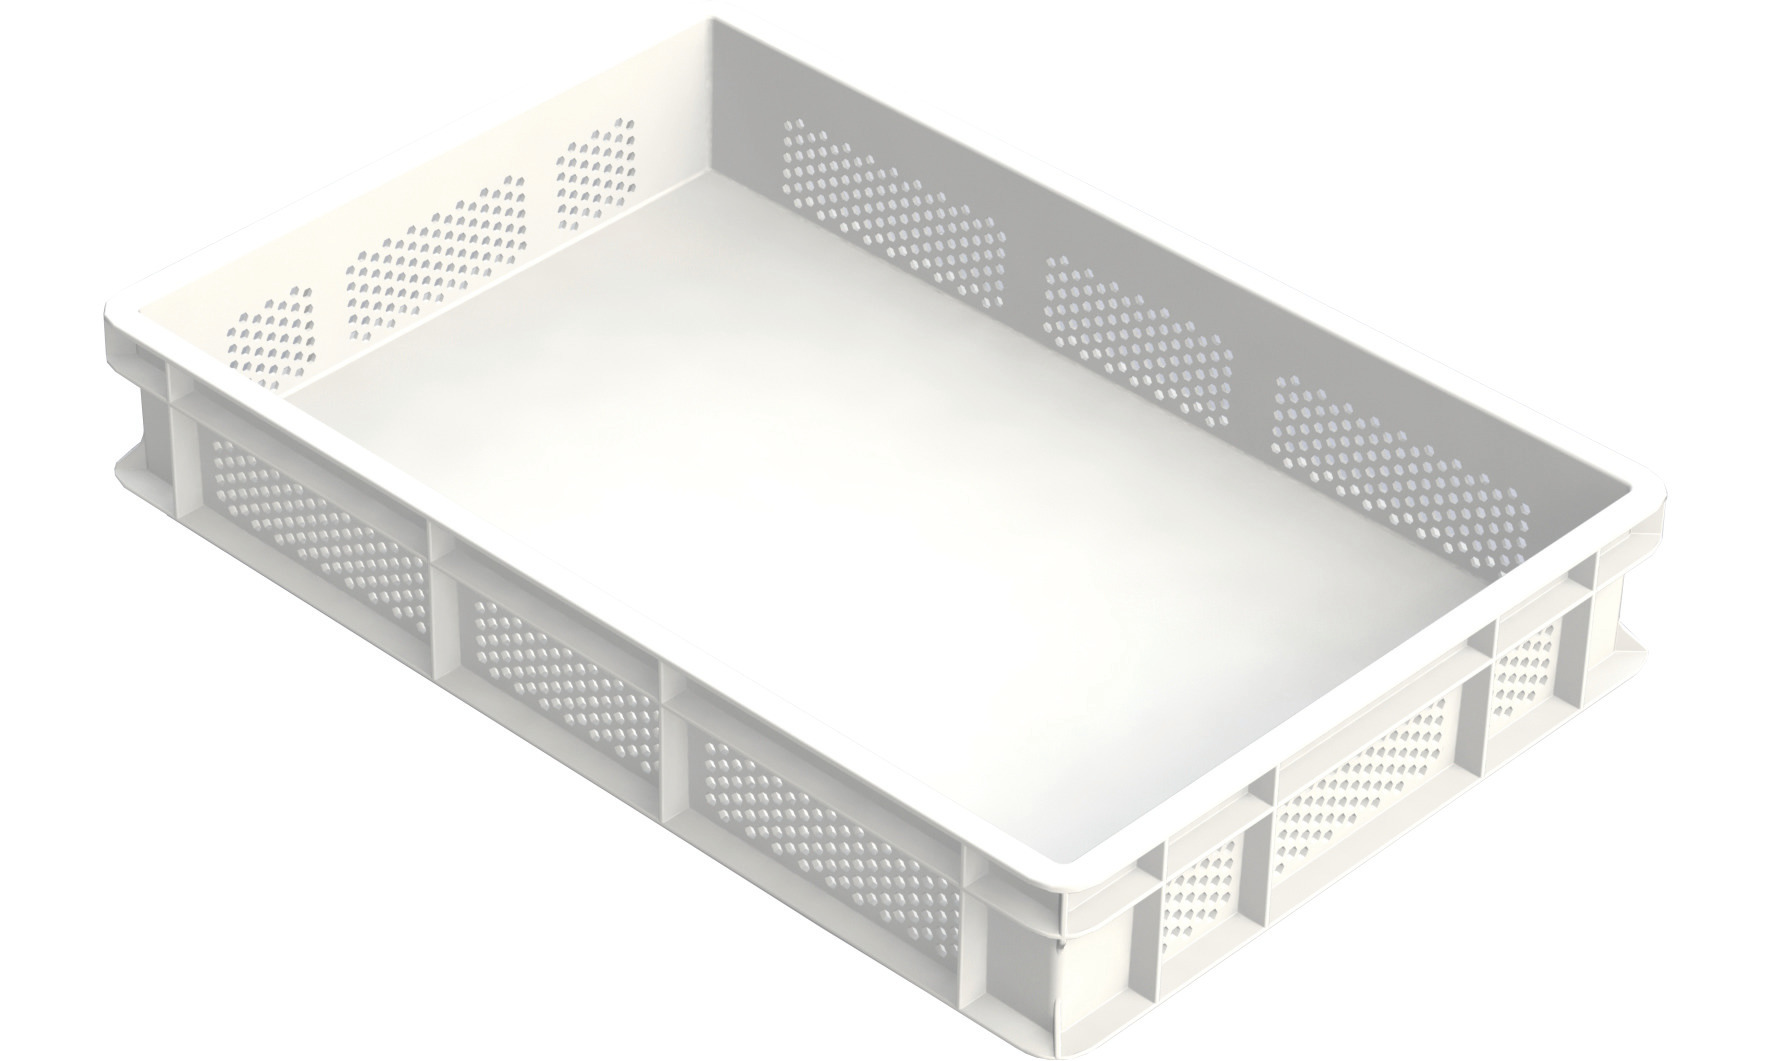 NUDELTEIG-BOX, SEITEN PERFORIERT, Polyethylen, weiß, 600 x 400 x 100 mm